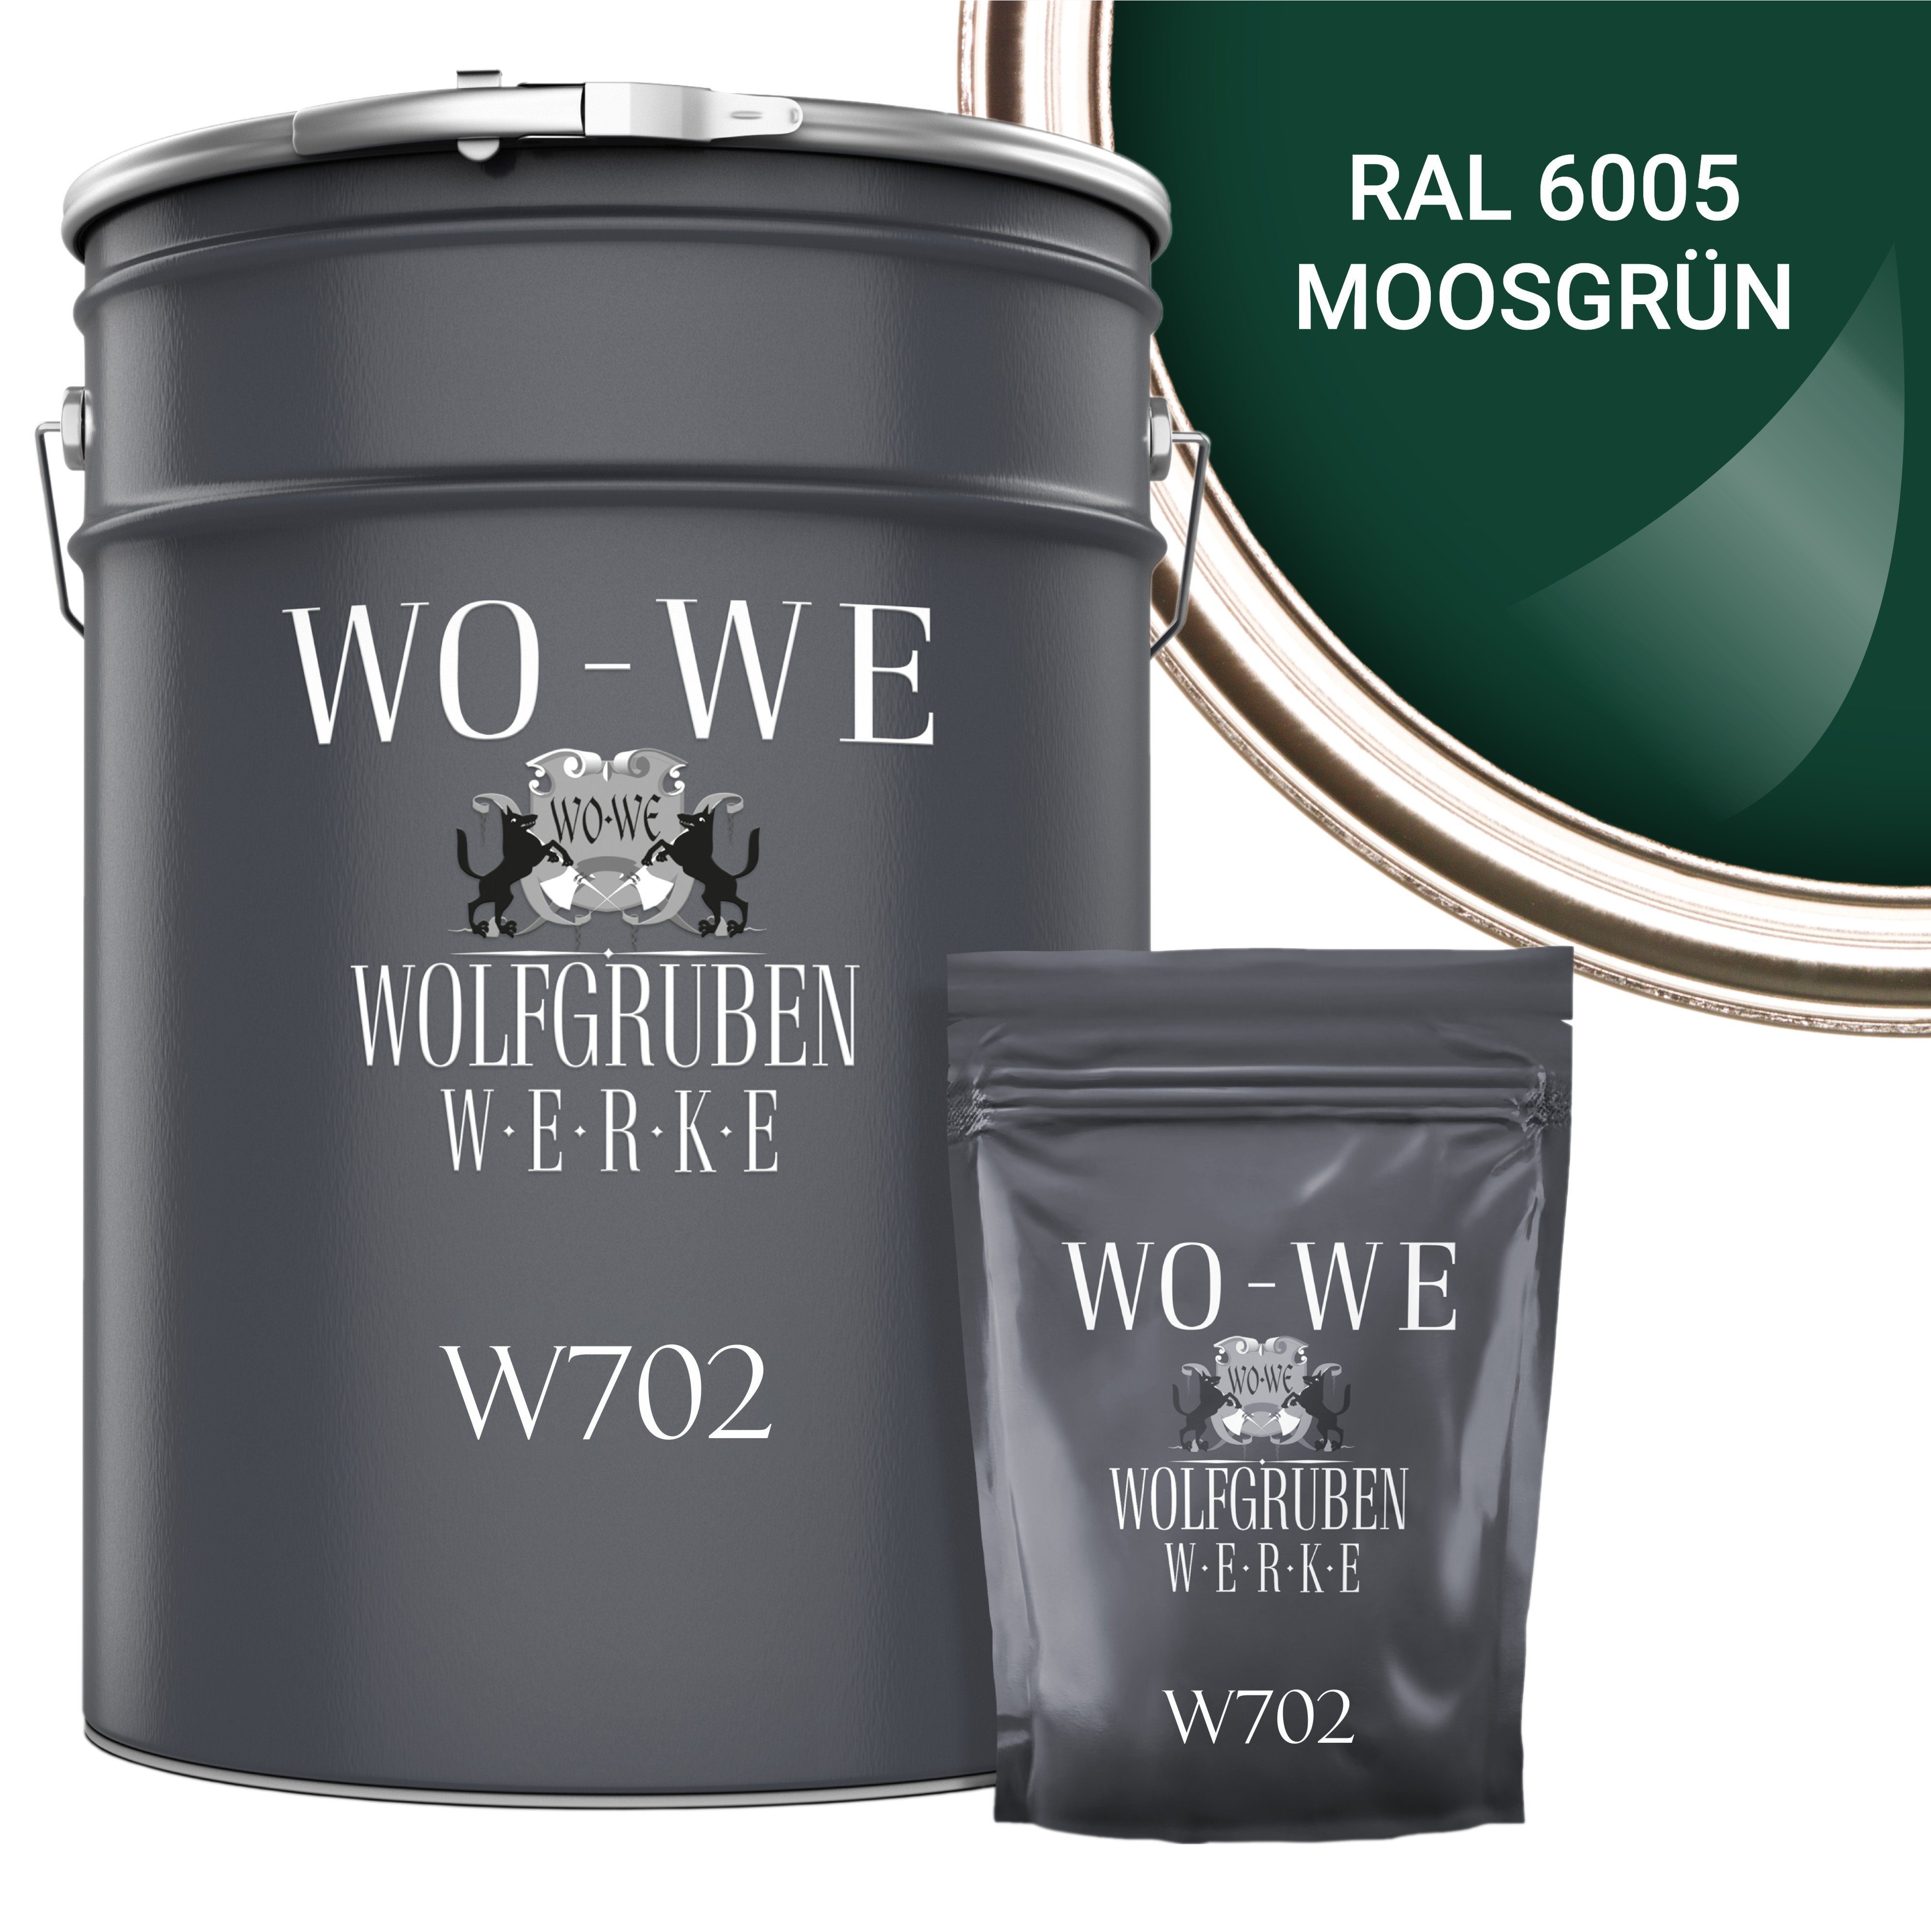 WO-WE Bodenversiegelung 2K Garagenfarbe Bodenbeschichtung W702, 2,5-20Kg, Seidenglänzend, Epoxidharz RAL 6005 Moosgrün